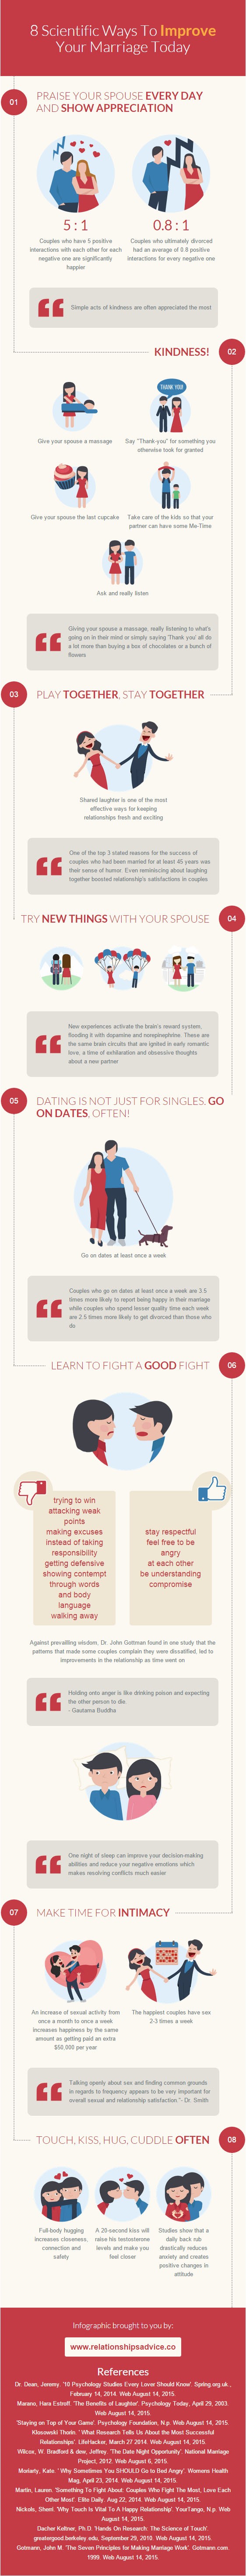 Quels sont les secrets d'un mariage heureux ? (Infographie : Relationshipsadvice.co)